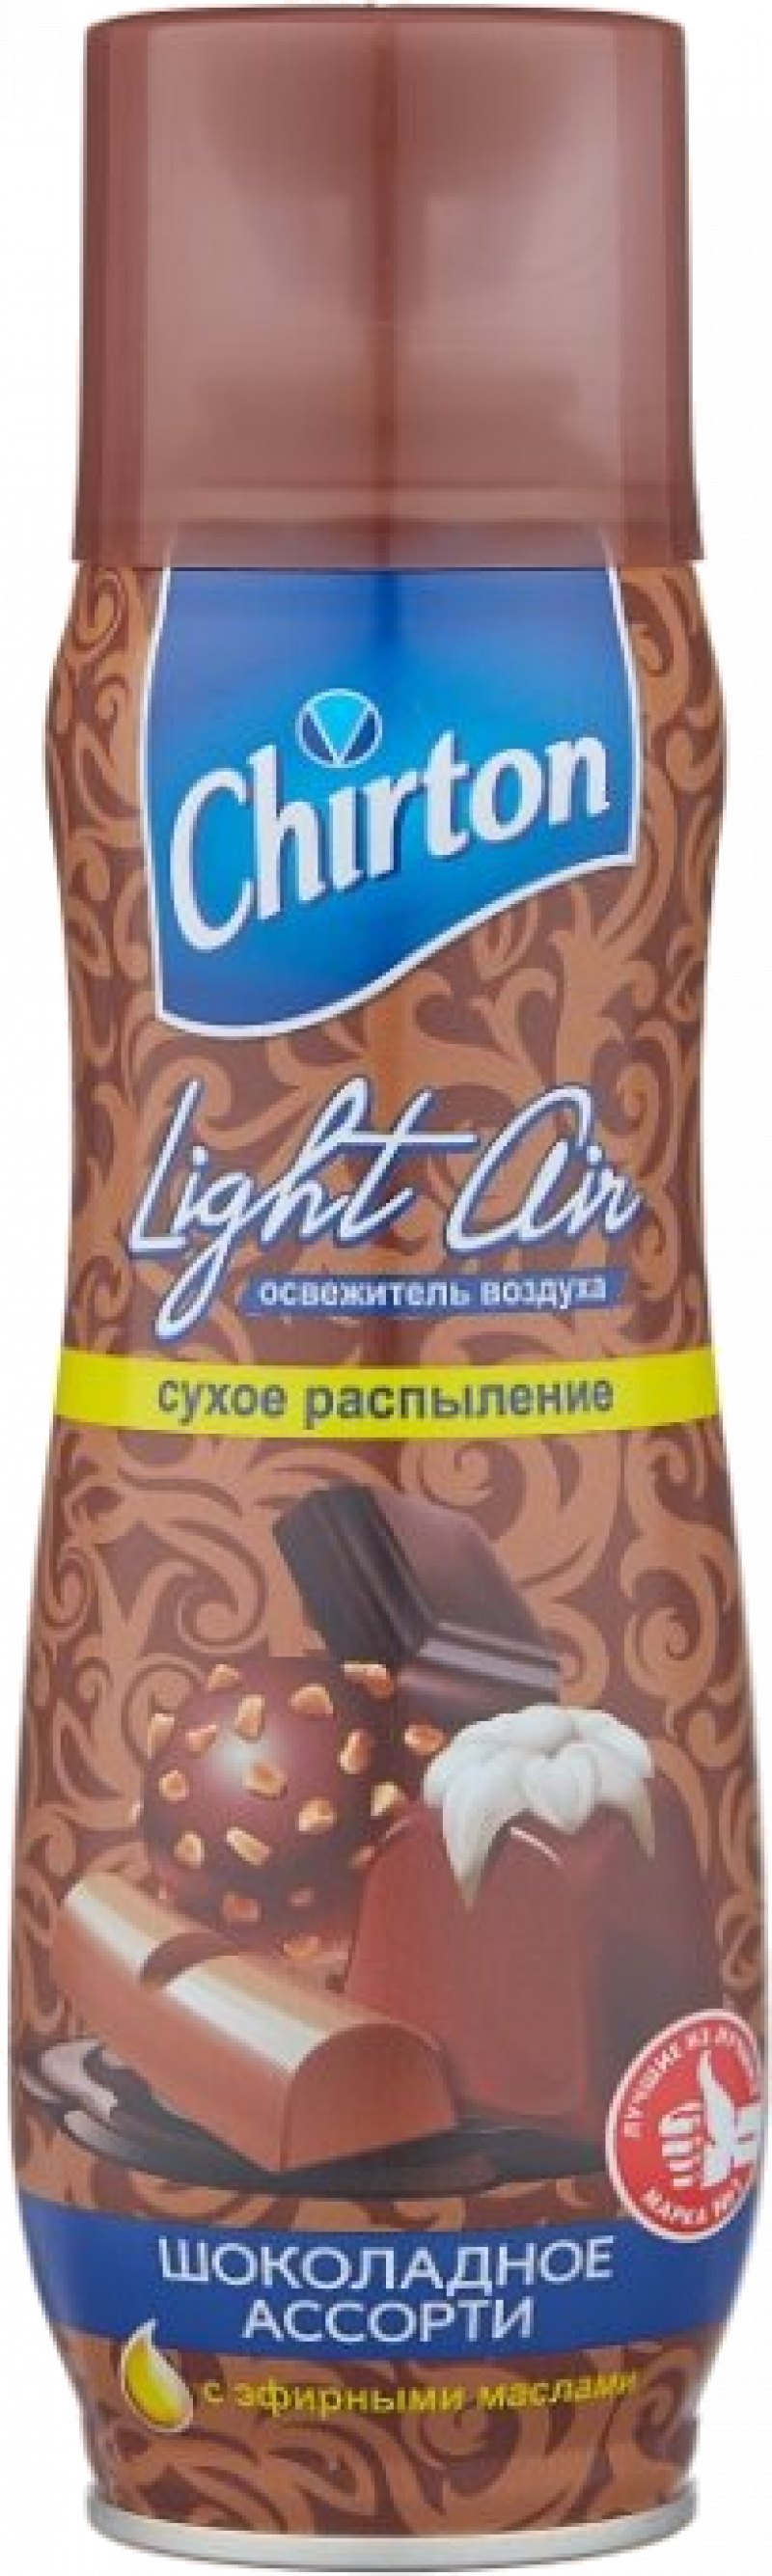 Освежитель воздуха ТМ Chirton Light Air Шоколадное ассорти 300мл